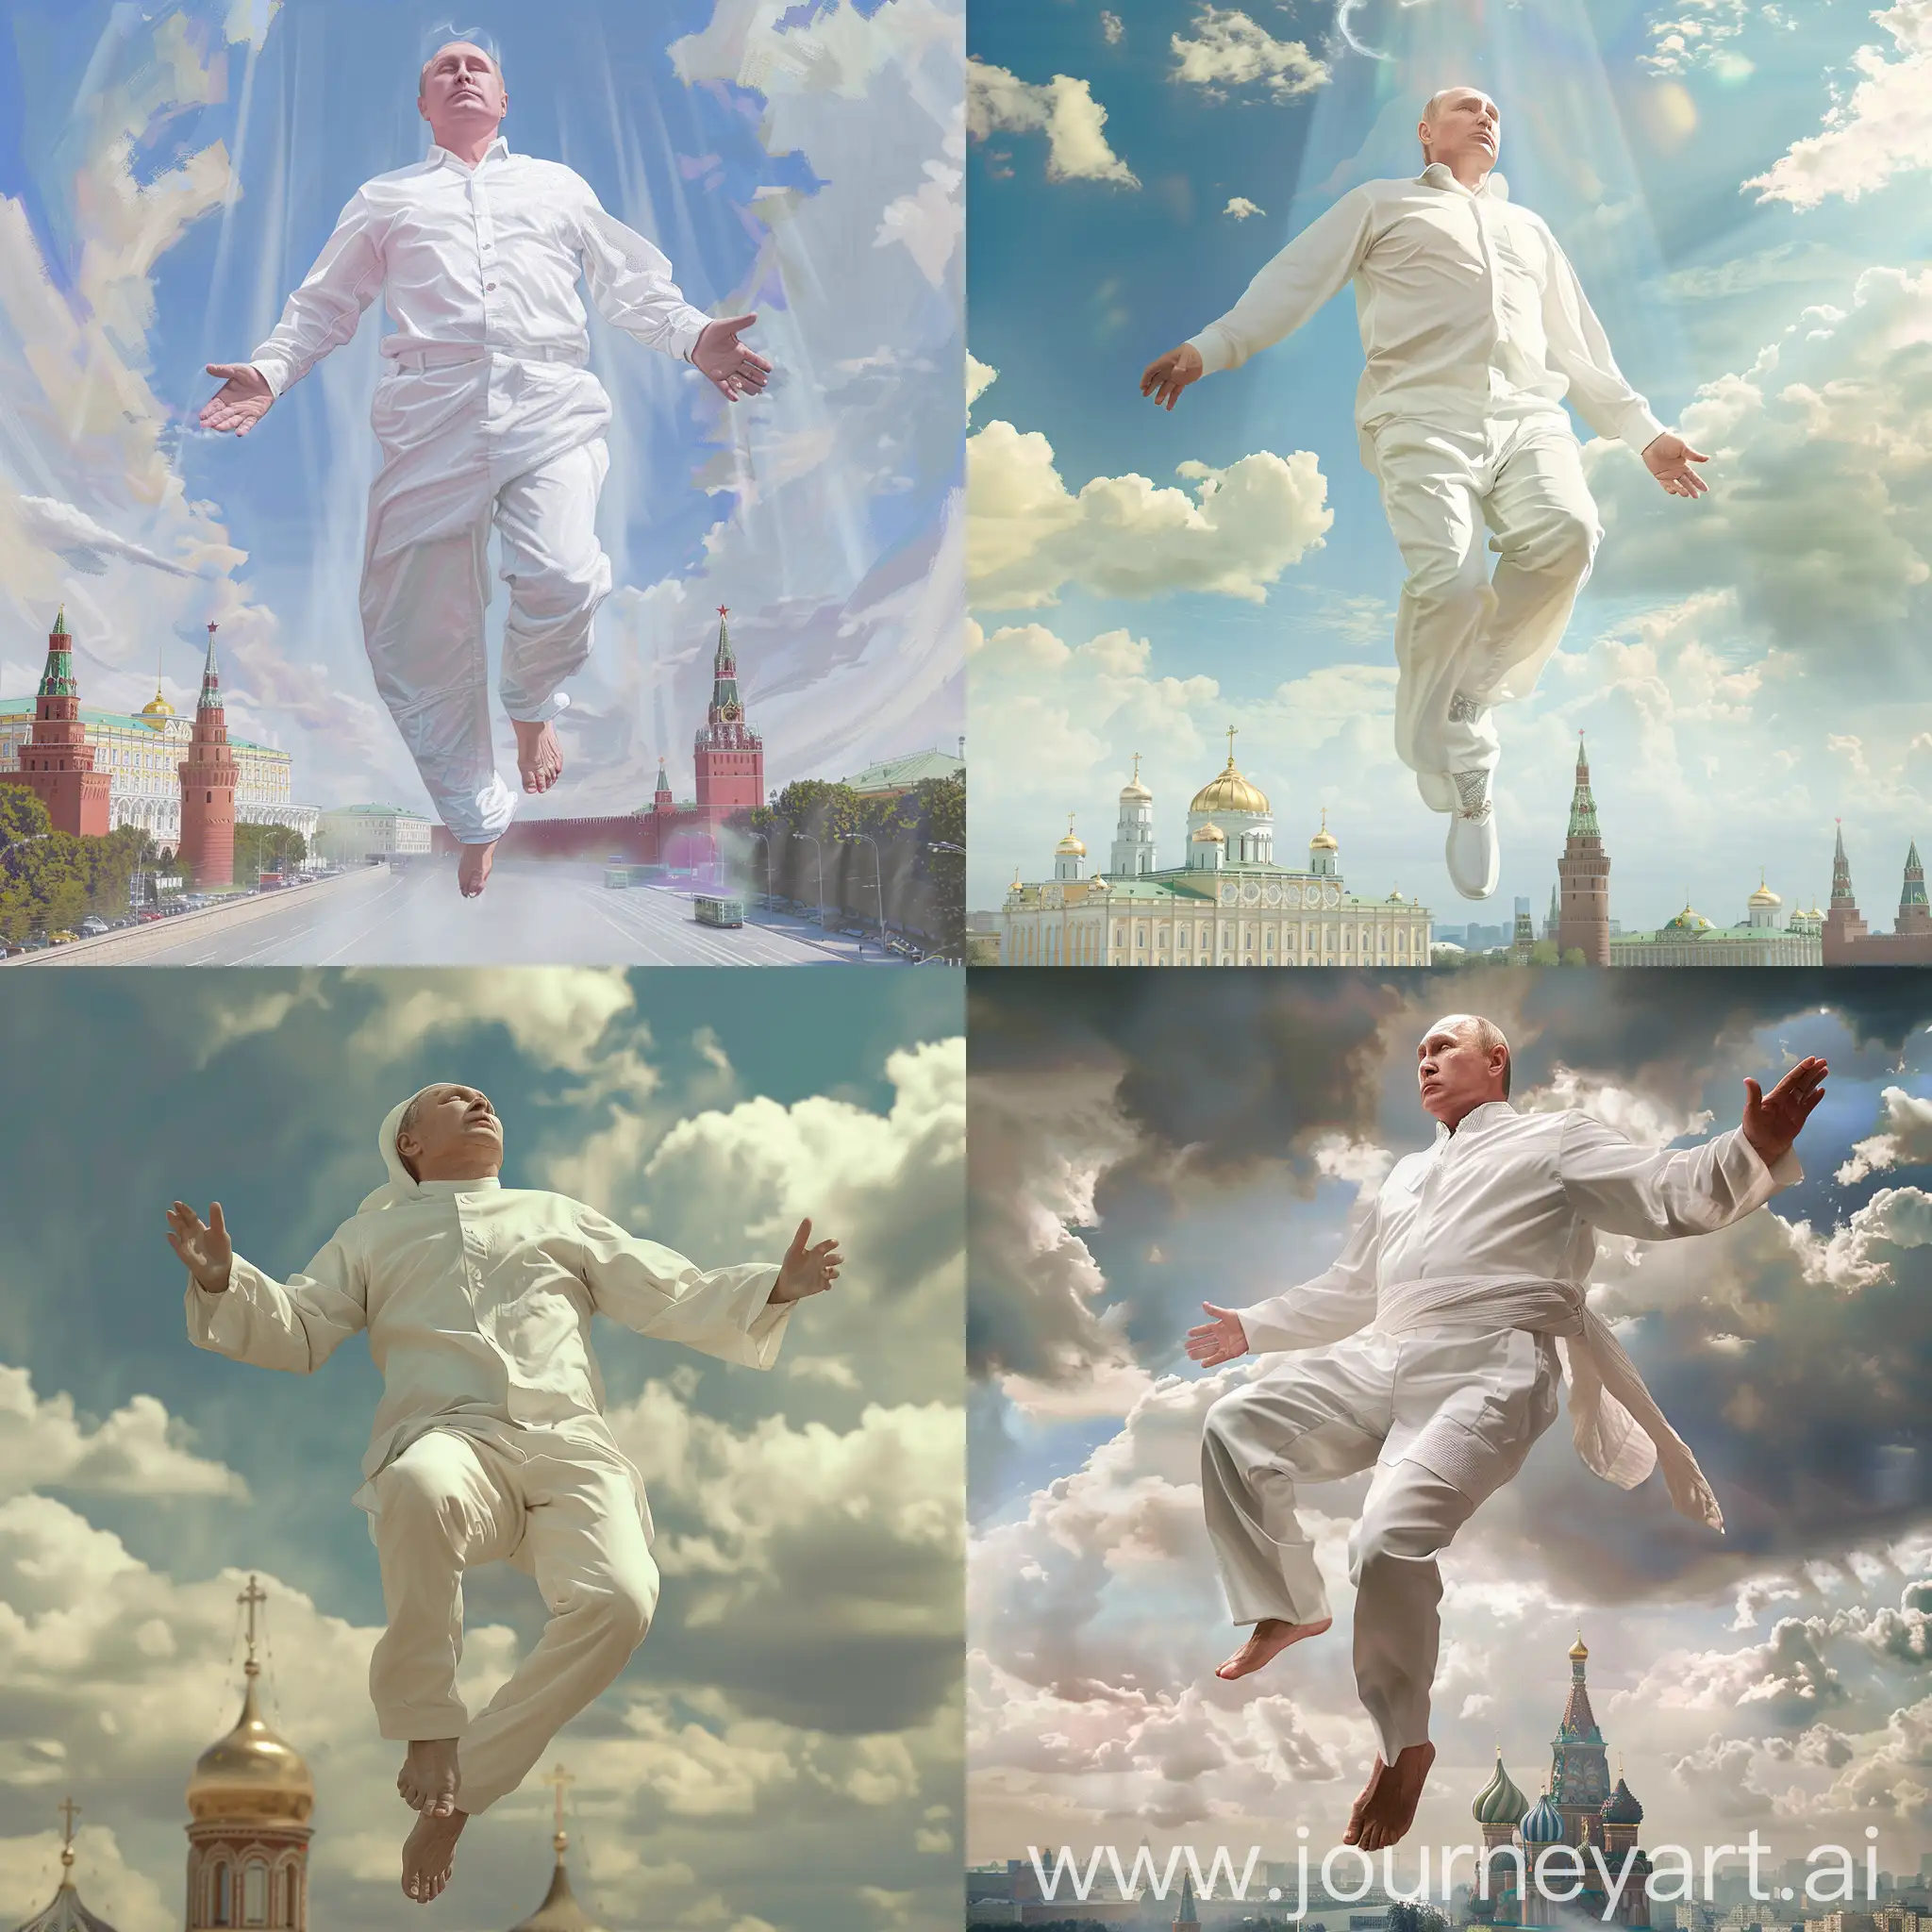 Владимир Путин в белой одежде образ бога, парит в воздухе, задний фон москва, рыбий глаз, 8к, гипер реализм. максимум деталей